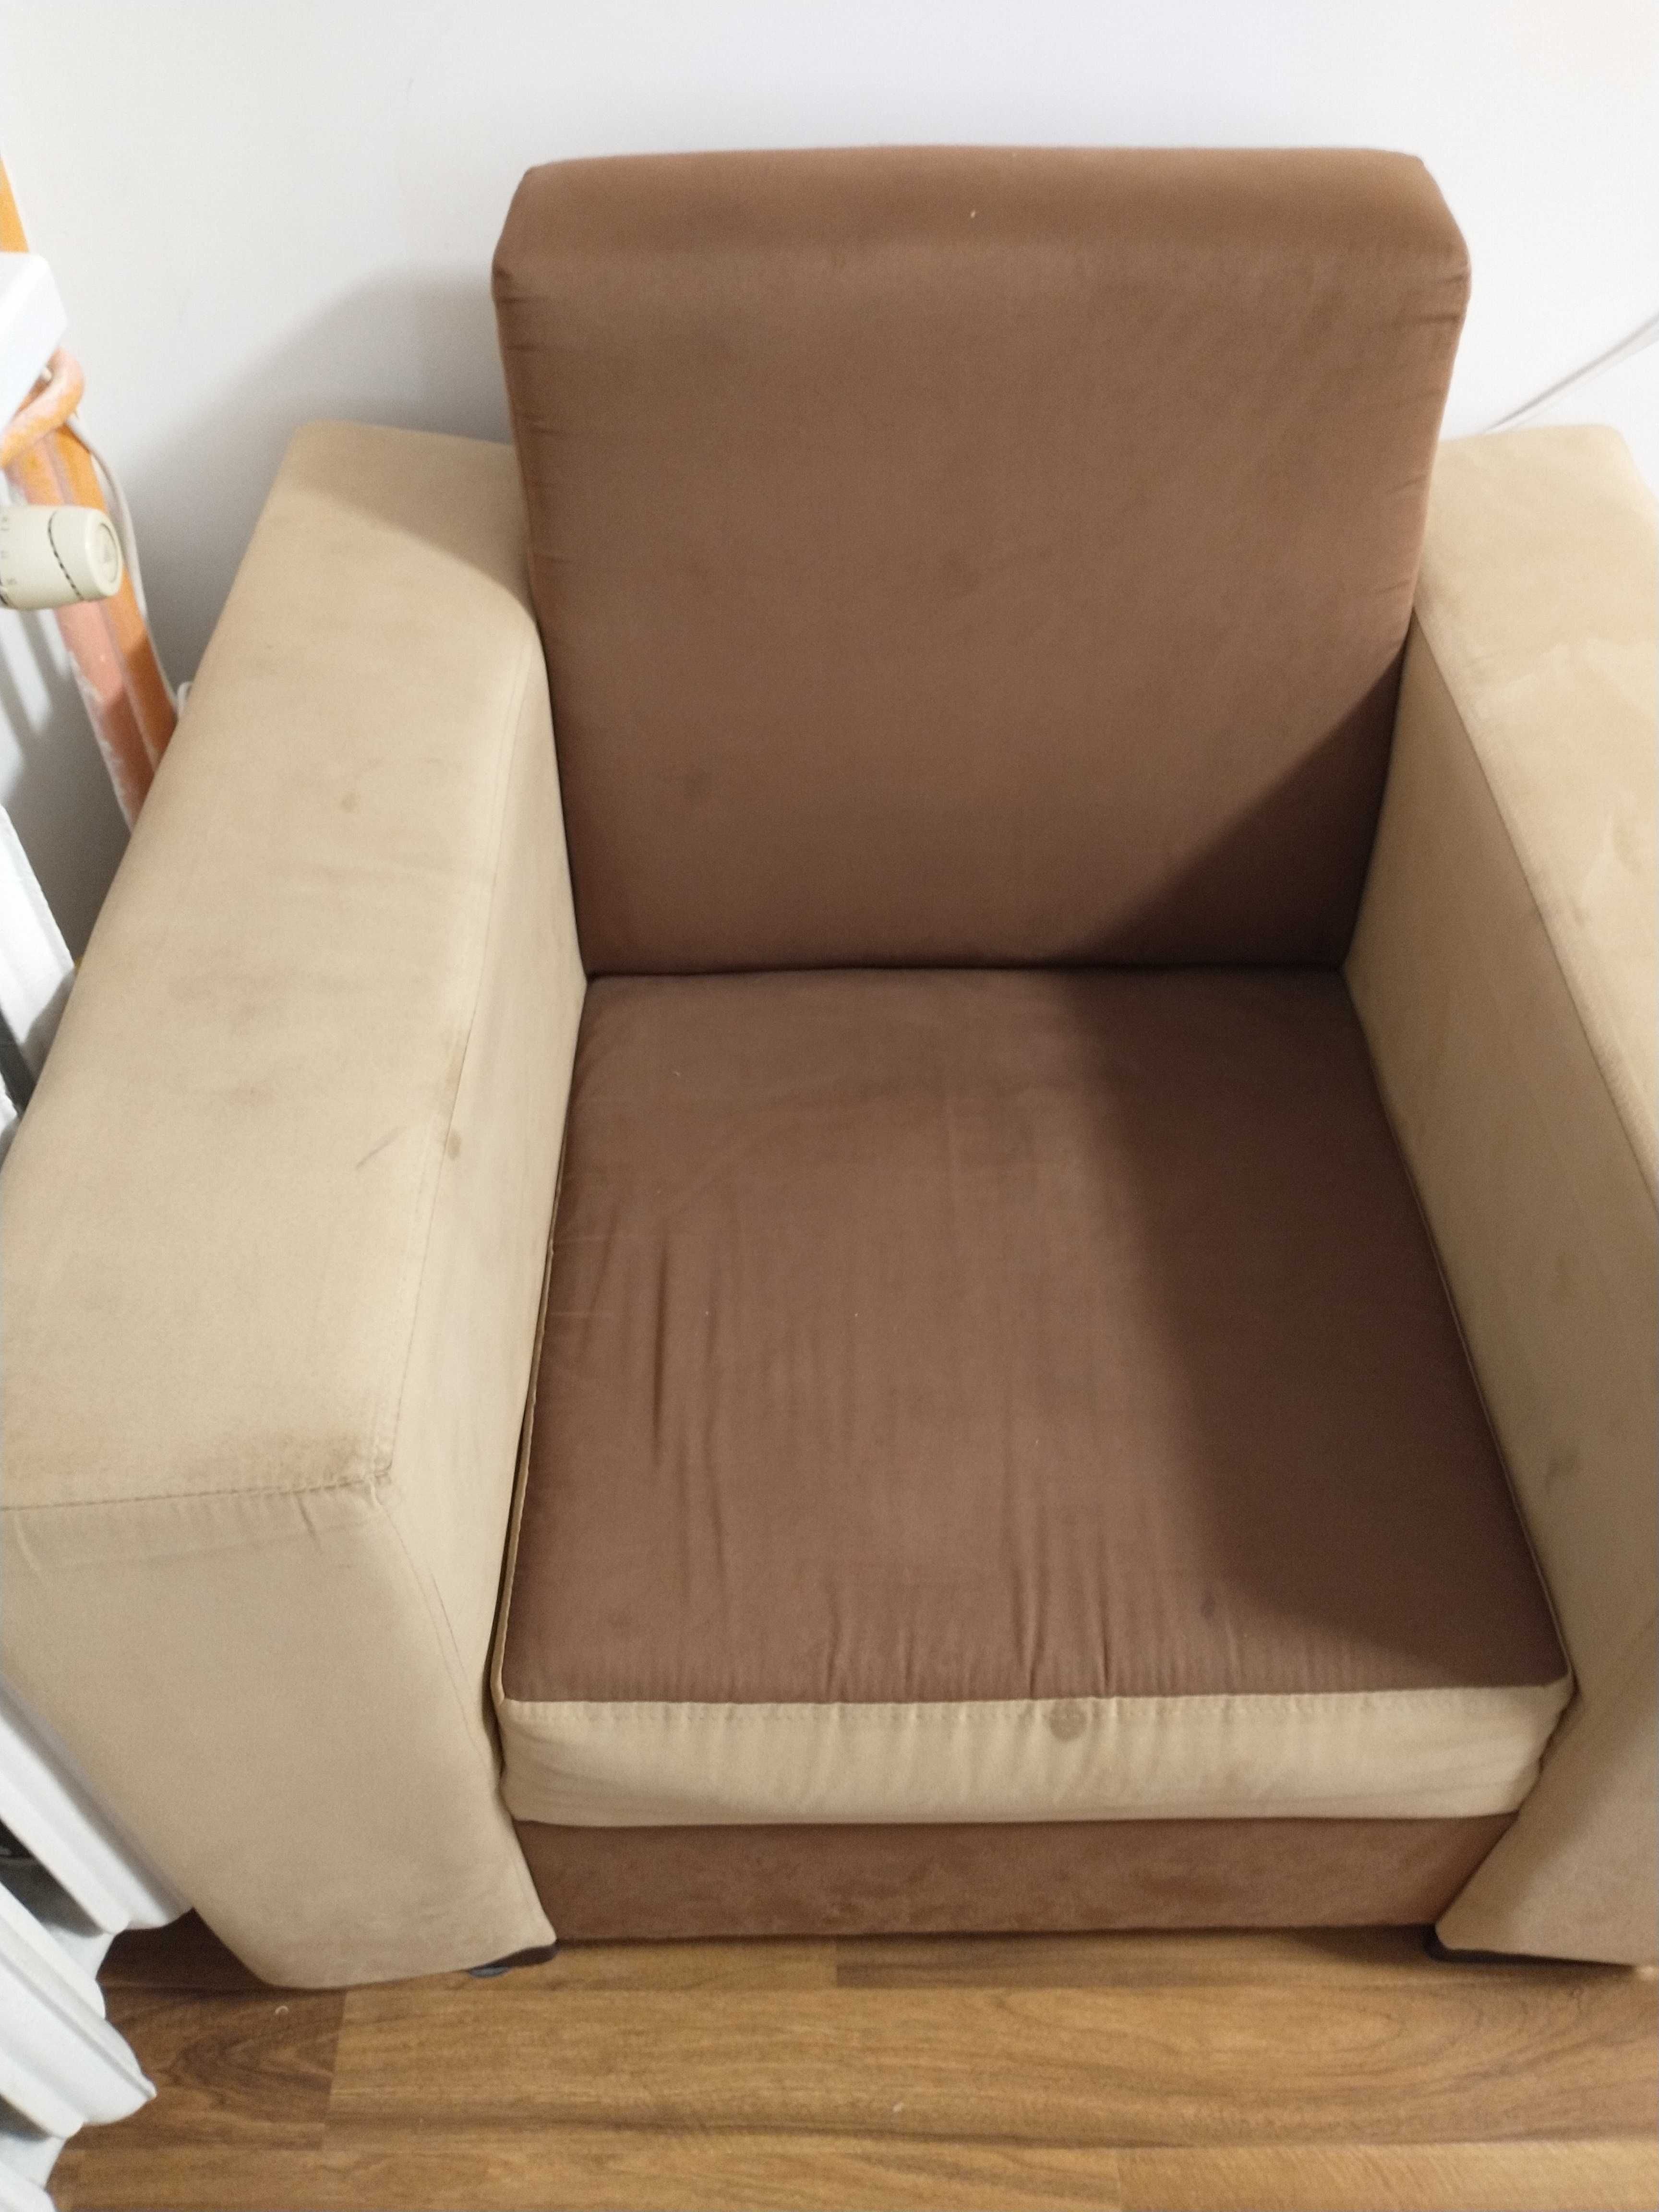 Fotel beżowo brązowy jak kwadrat stabilny